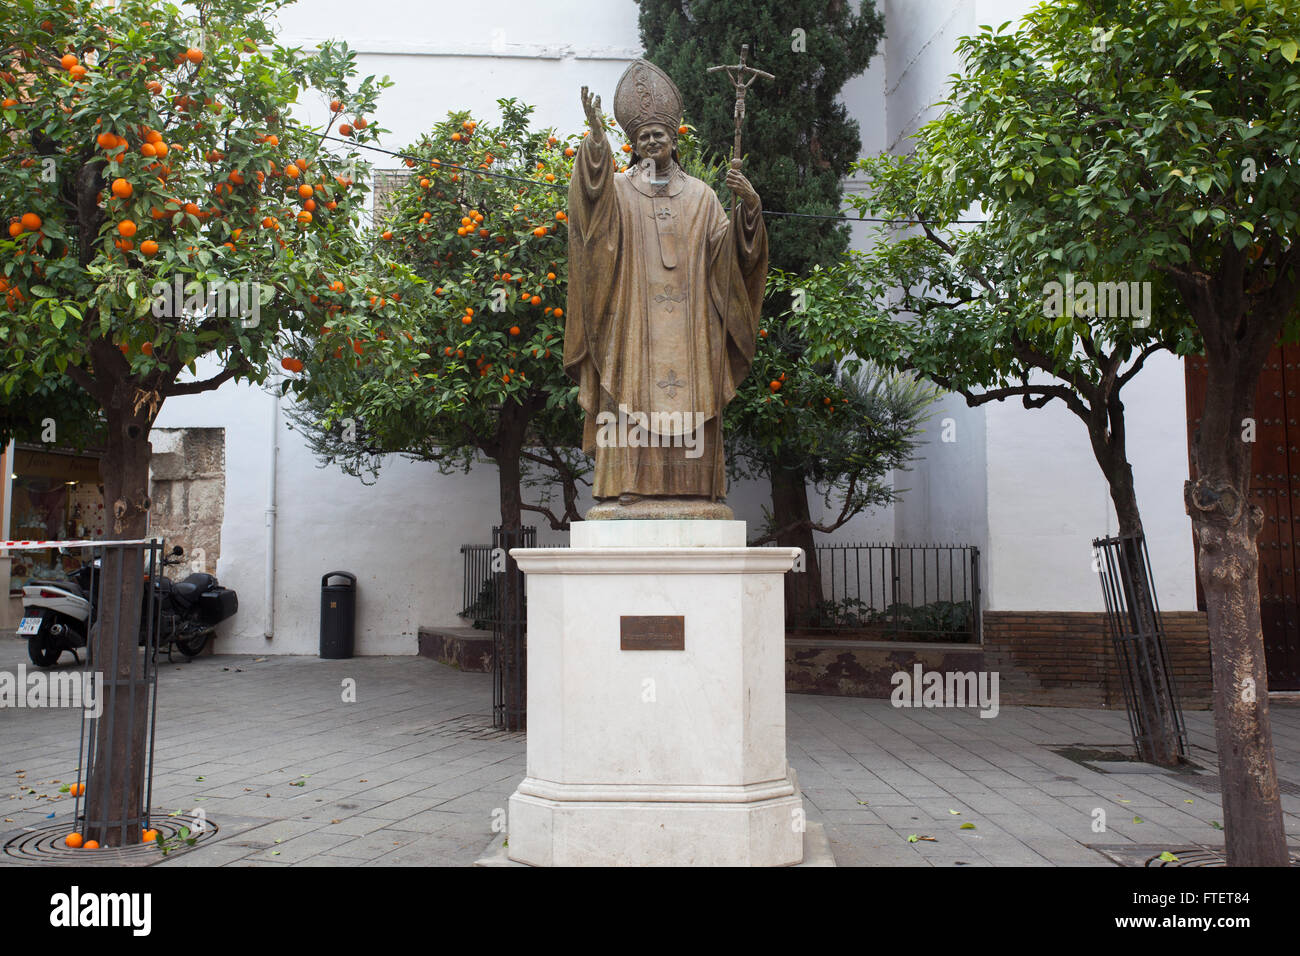 Papst Johannes Paul II.-Statue im Plaza Virgen de Los Reyes, Sevilla. Andalusien, Spanien. Stockfoto